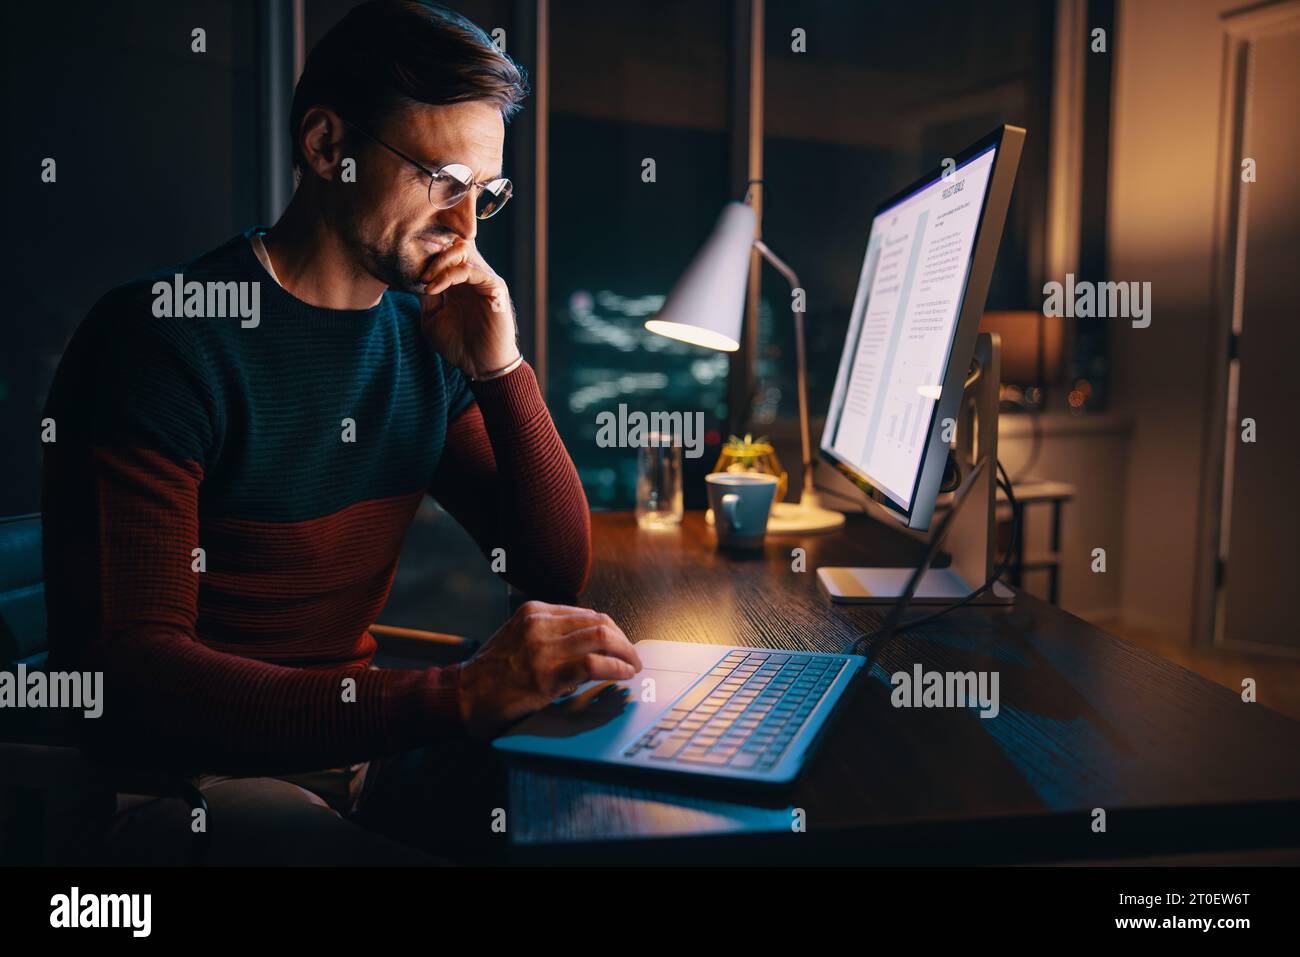 Un giovane imprenditore concentrato lavora fino a tardi nel suo ufficio, impegnato in una riunione online. E' determinato, penoso e devoto ai suoi affari. Foto Stock